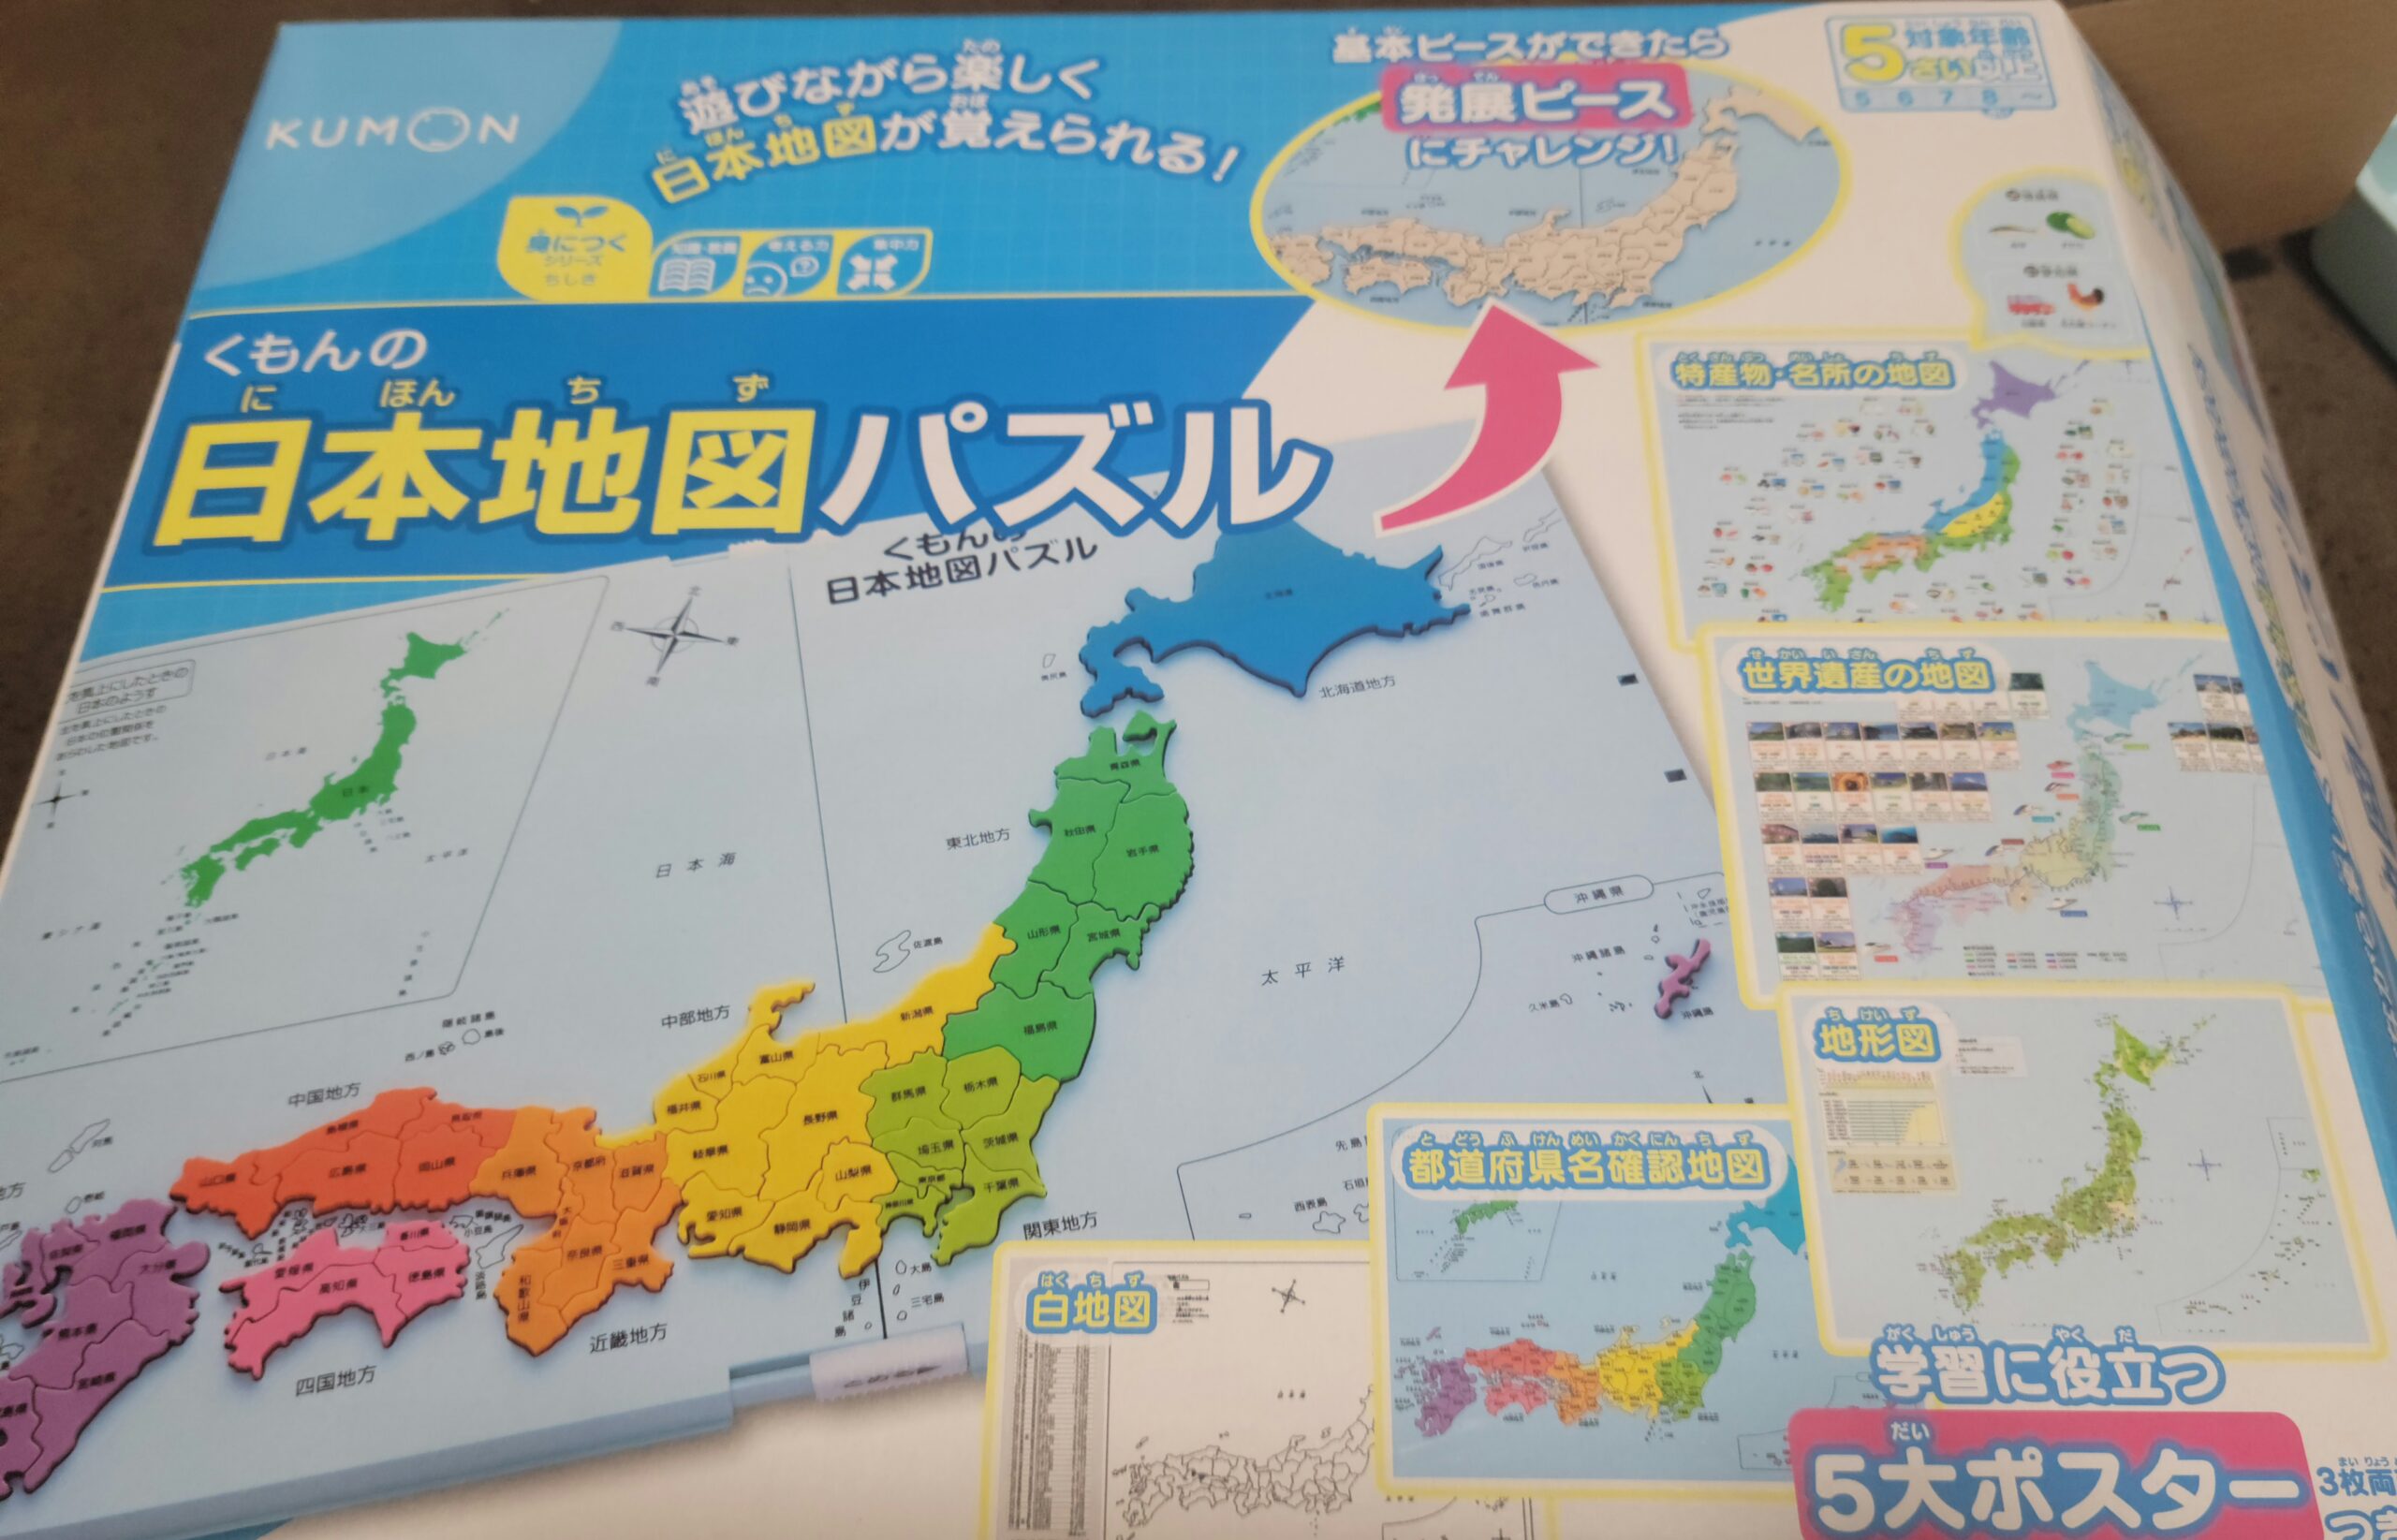 公文の日本地図 学童レビュー シルエットから県名当てる子が続出